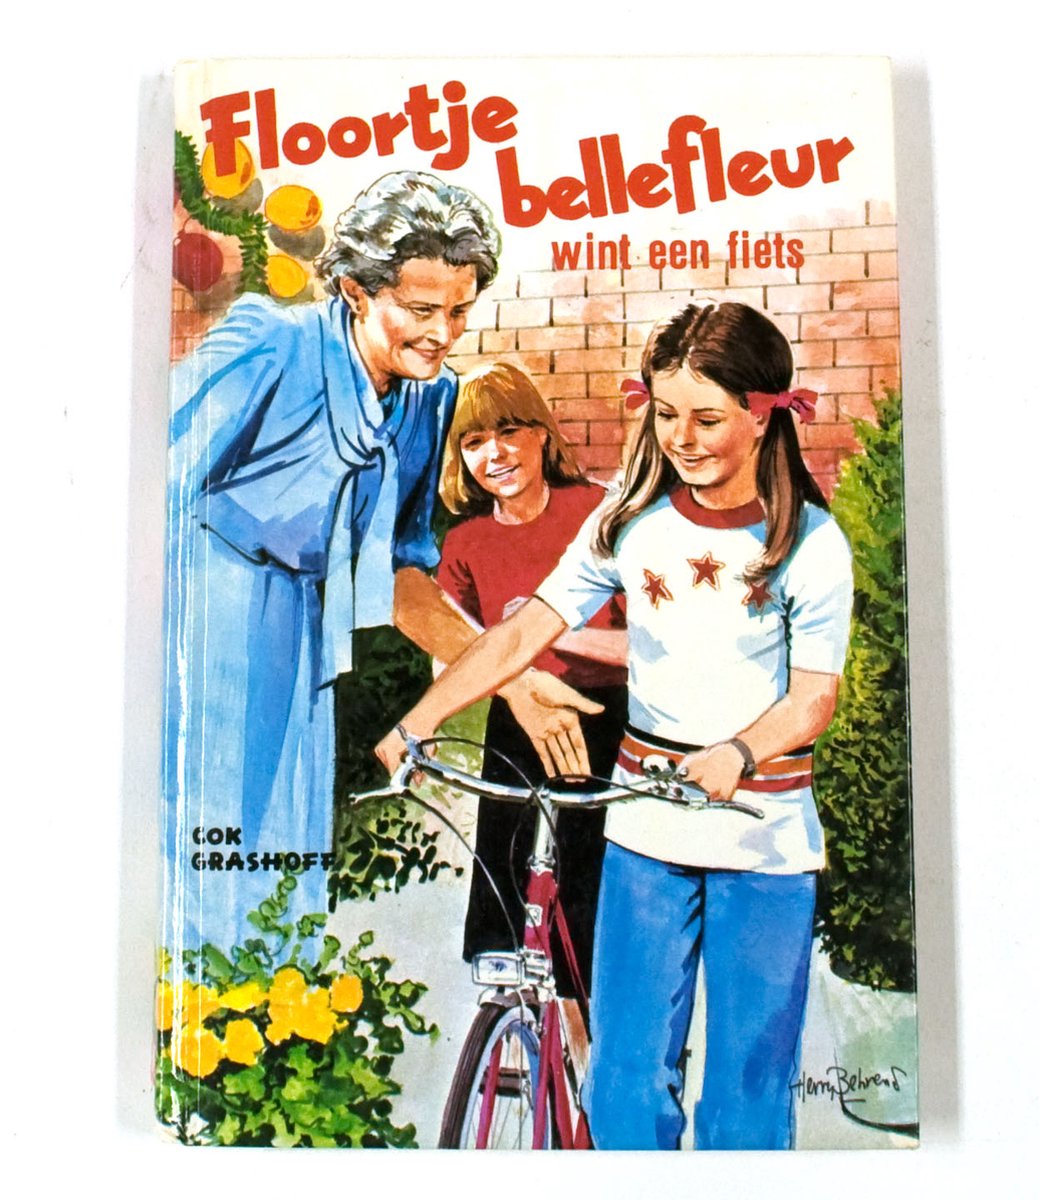 Floortje bellefleur wint een fiets